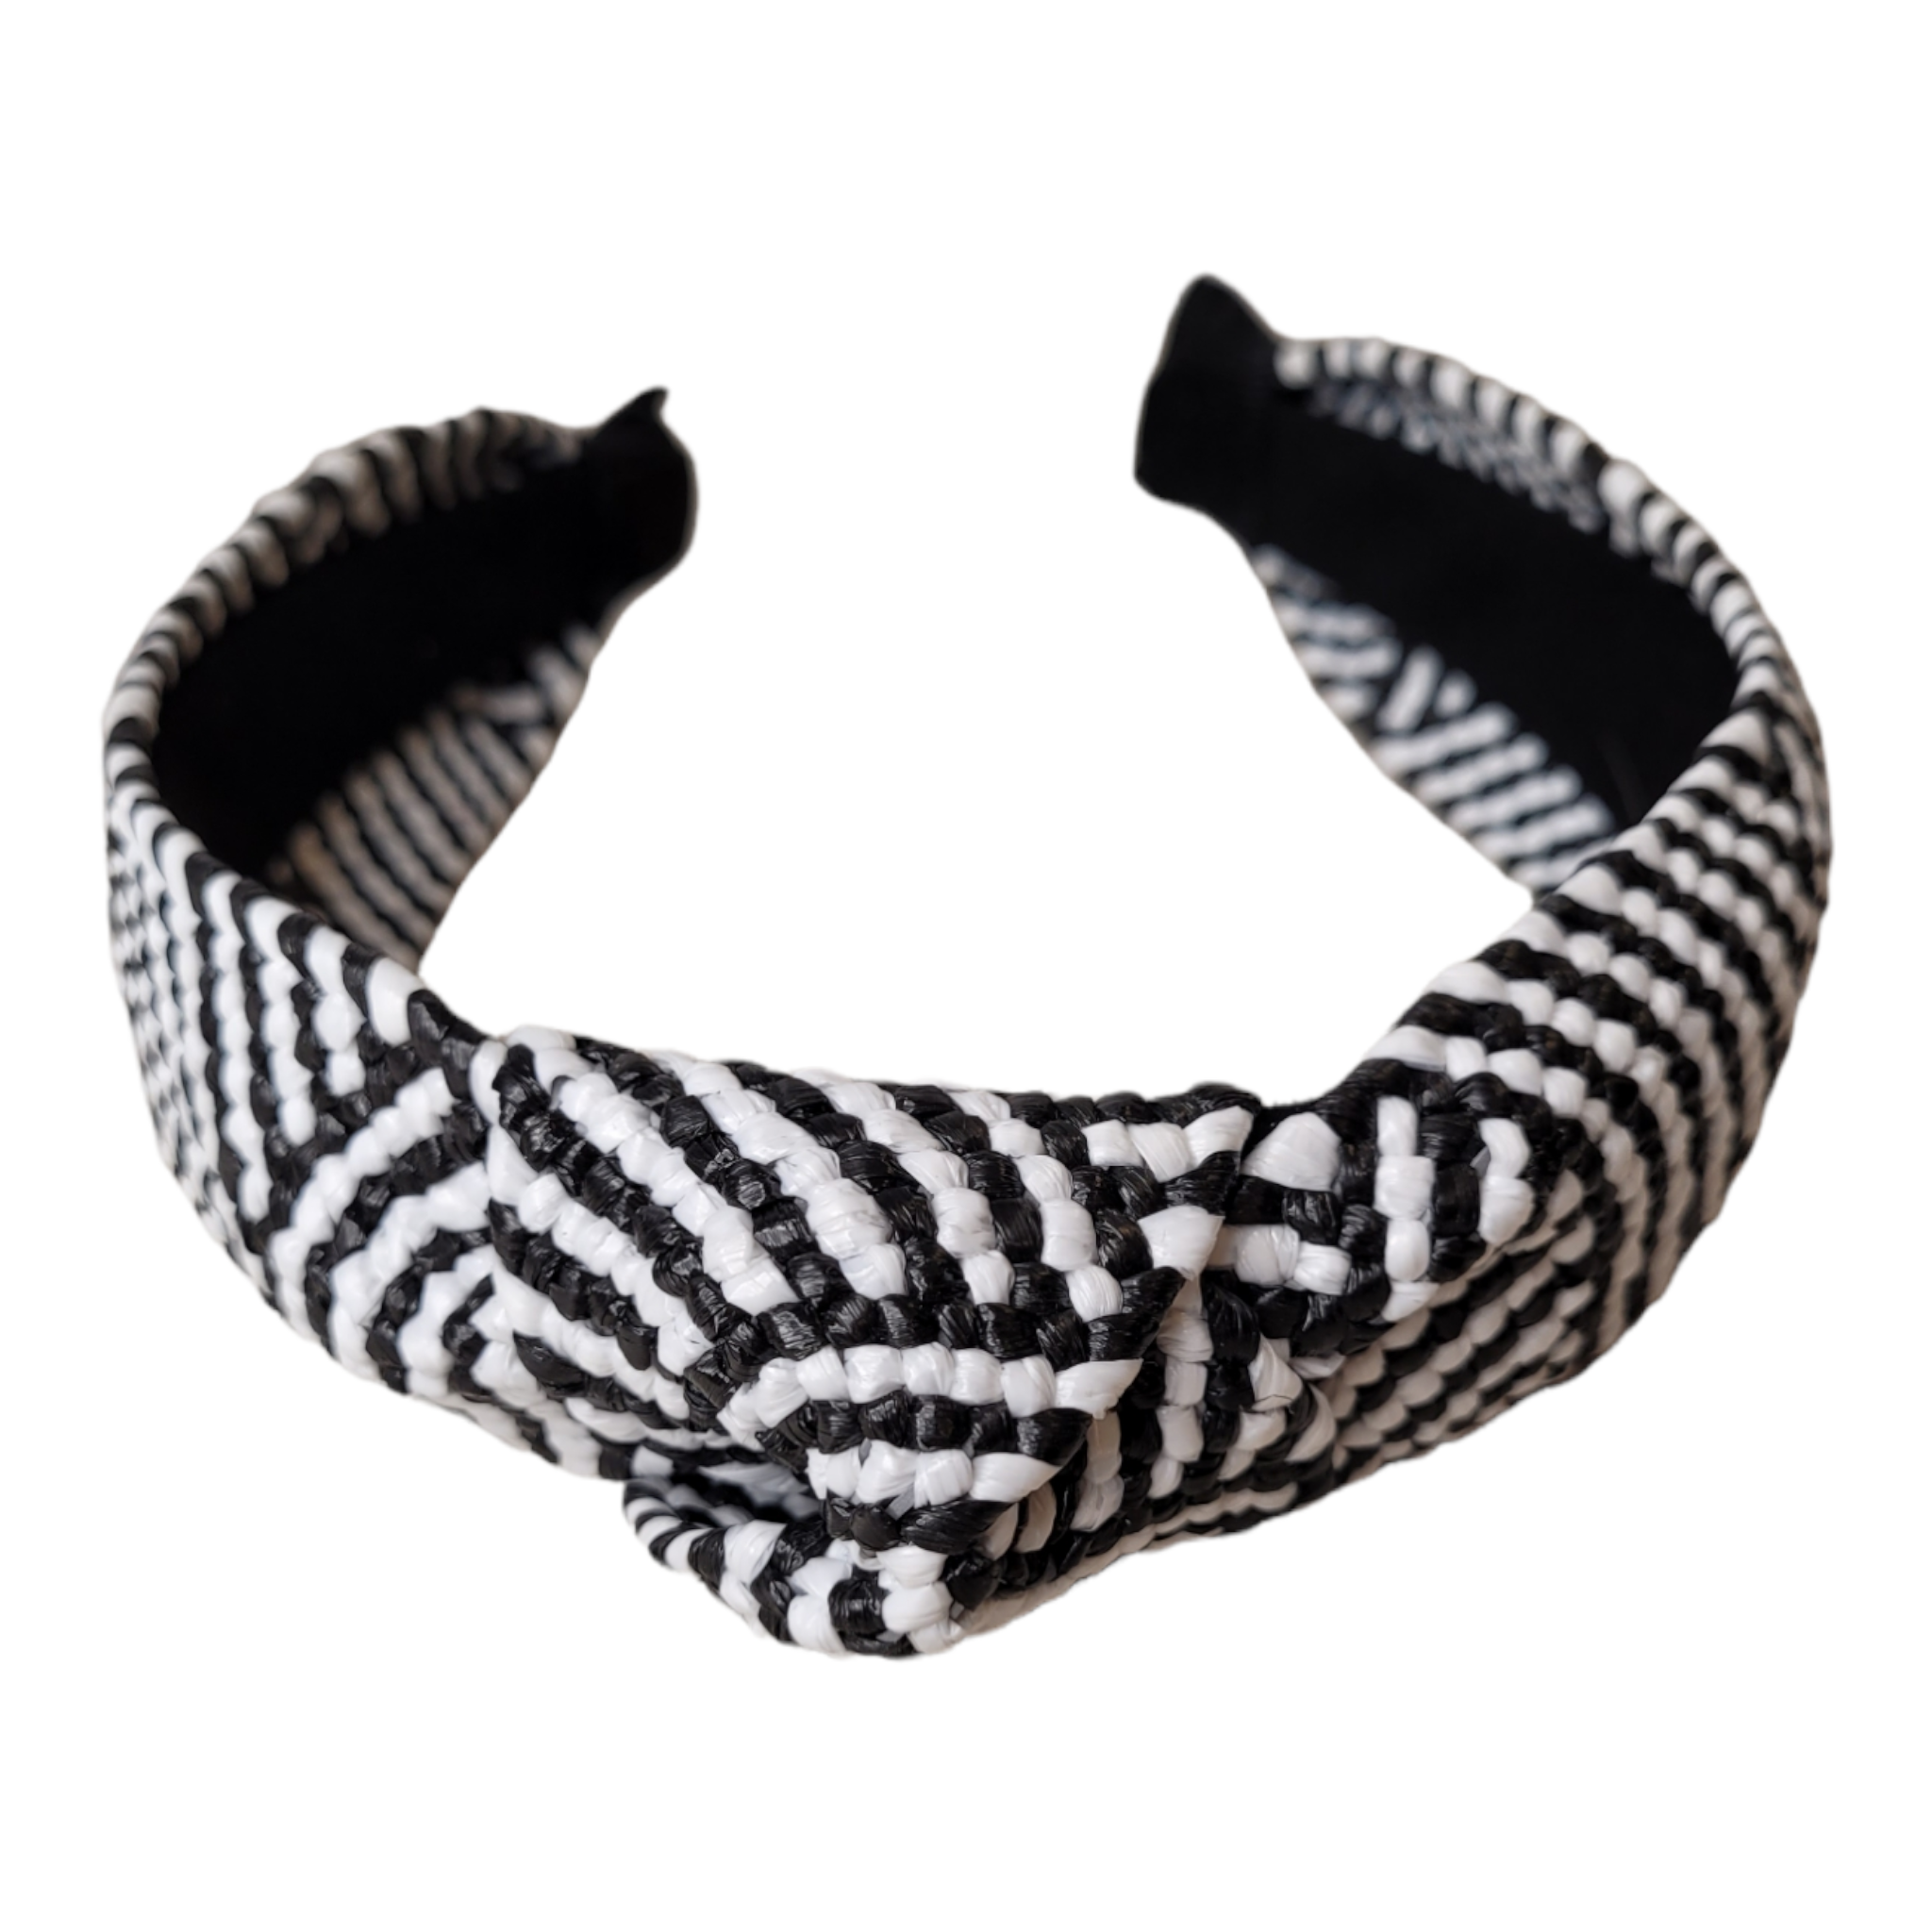 Black & White Raffia Top Knot Headband-Accessories-LouisGeorge Boutique-LouisGeorge Boutique, Women’s Fashion Boutique Located in Trussville, Alabama